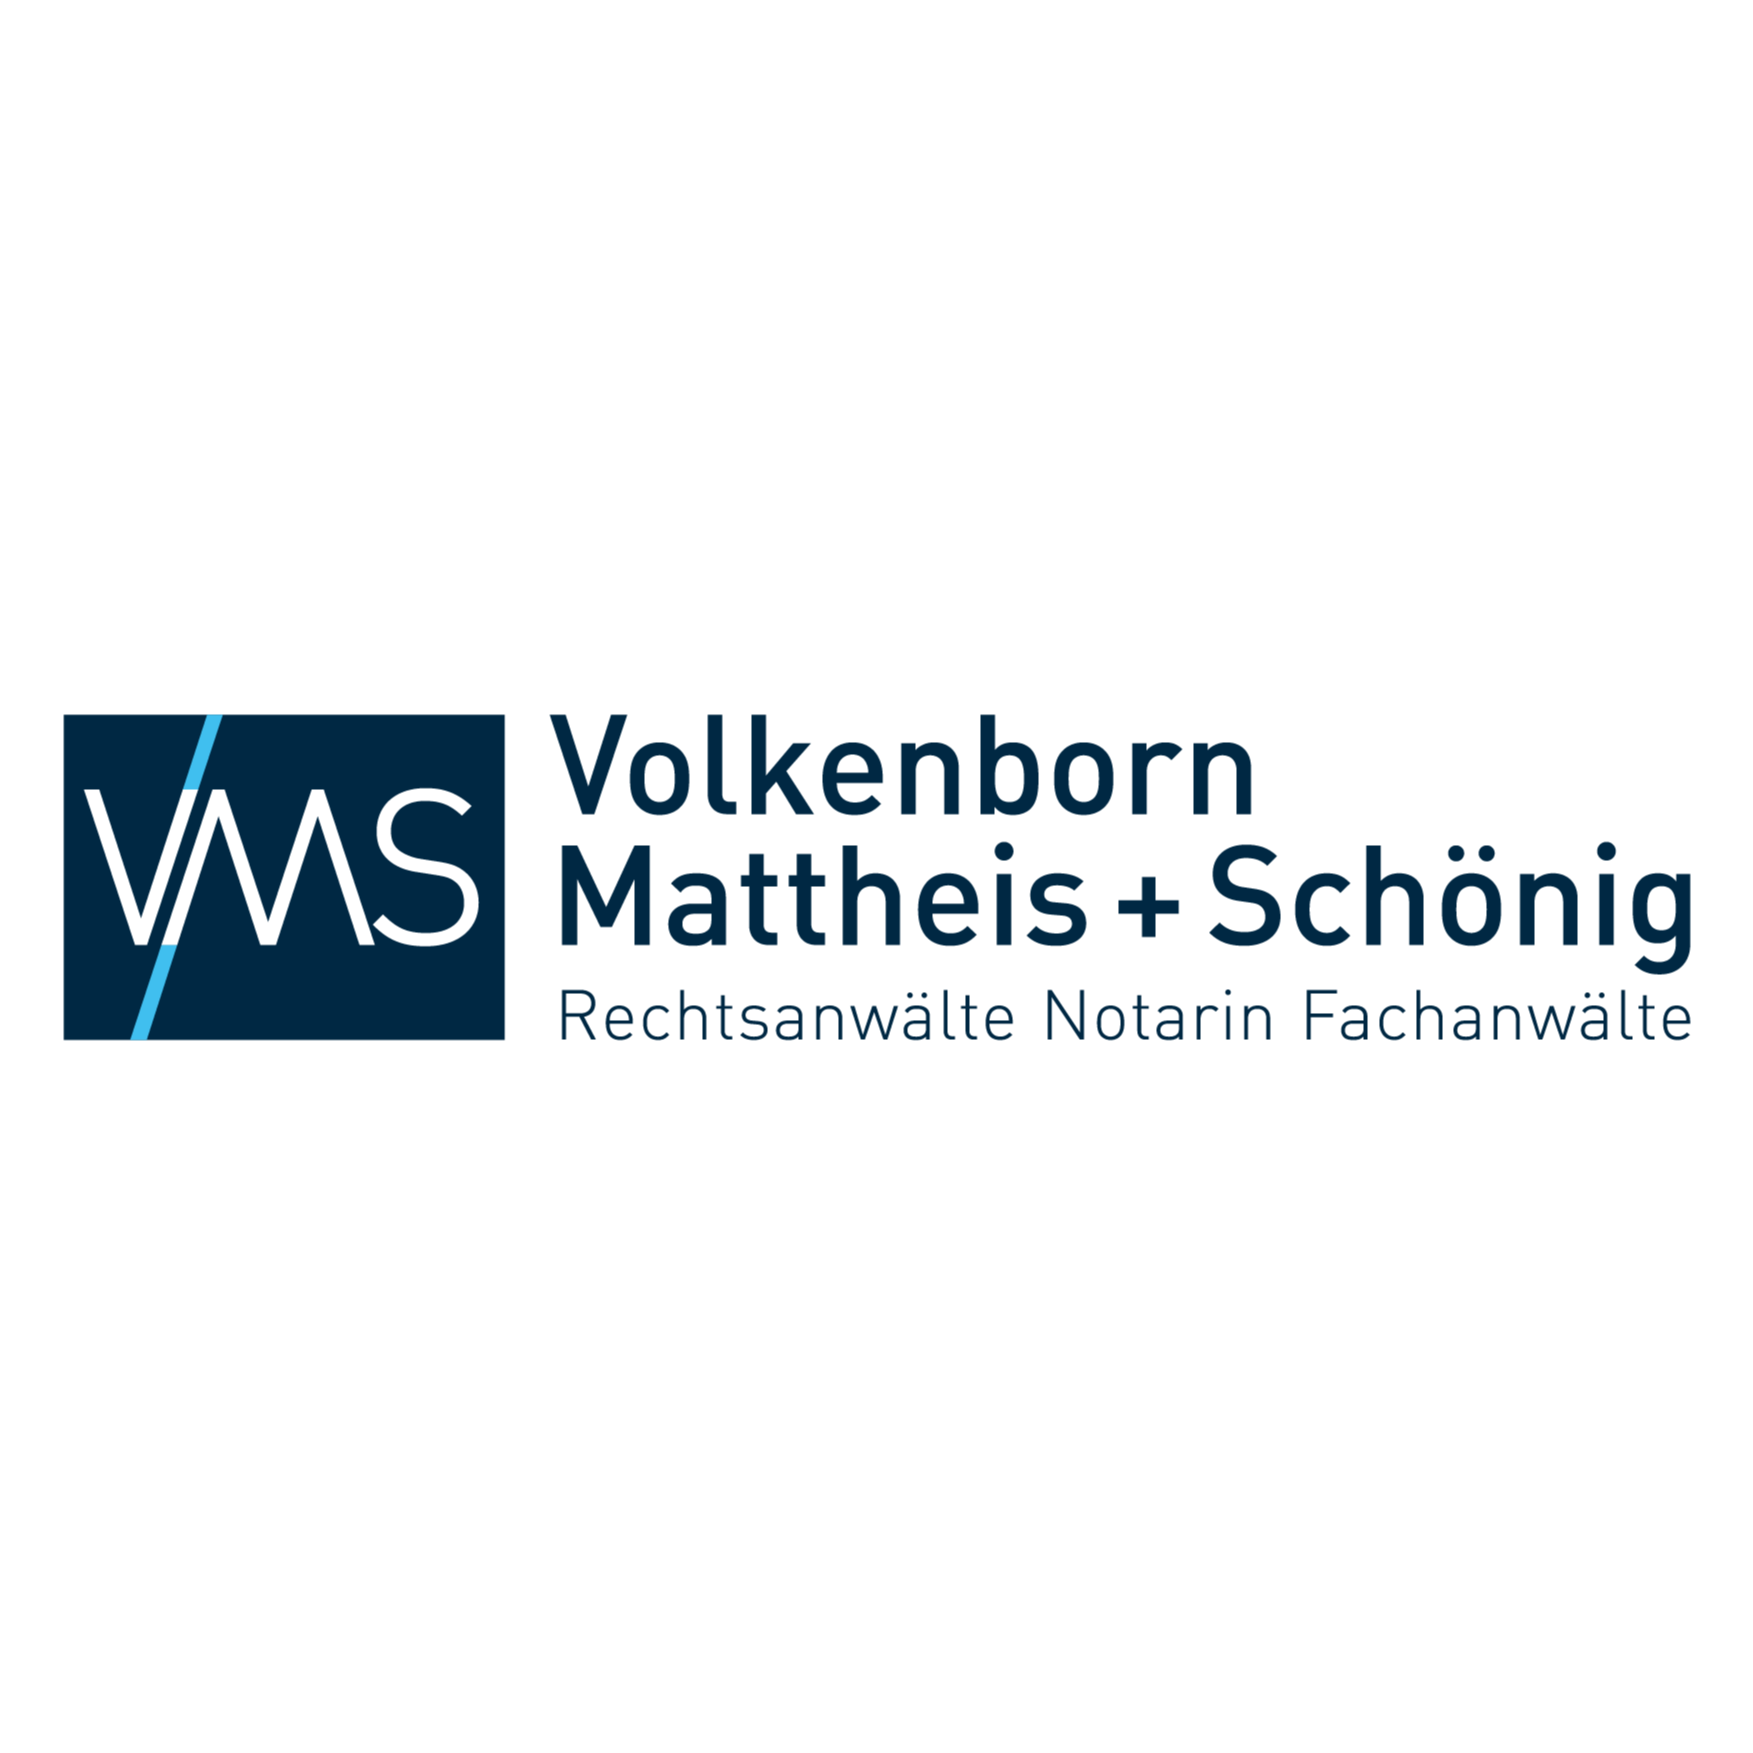 Volkenborn - Mattheis - Schönig Rechtsanwälte Notariat Fachanwälte in Herten in Westfalen - Logo